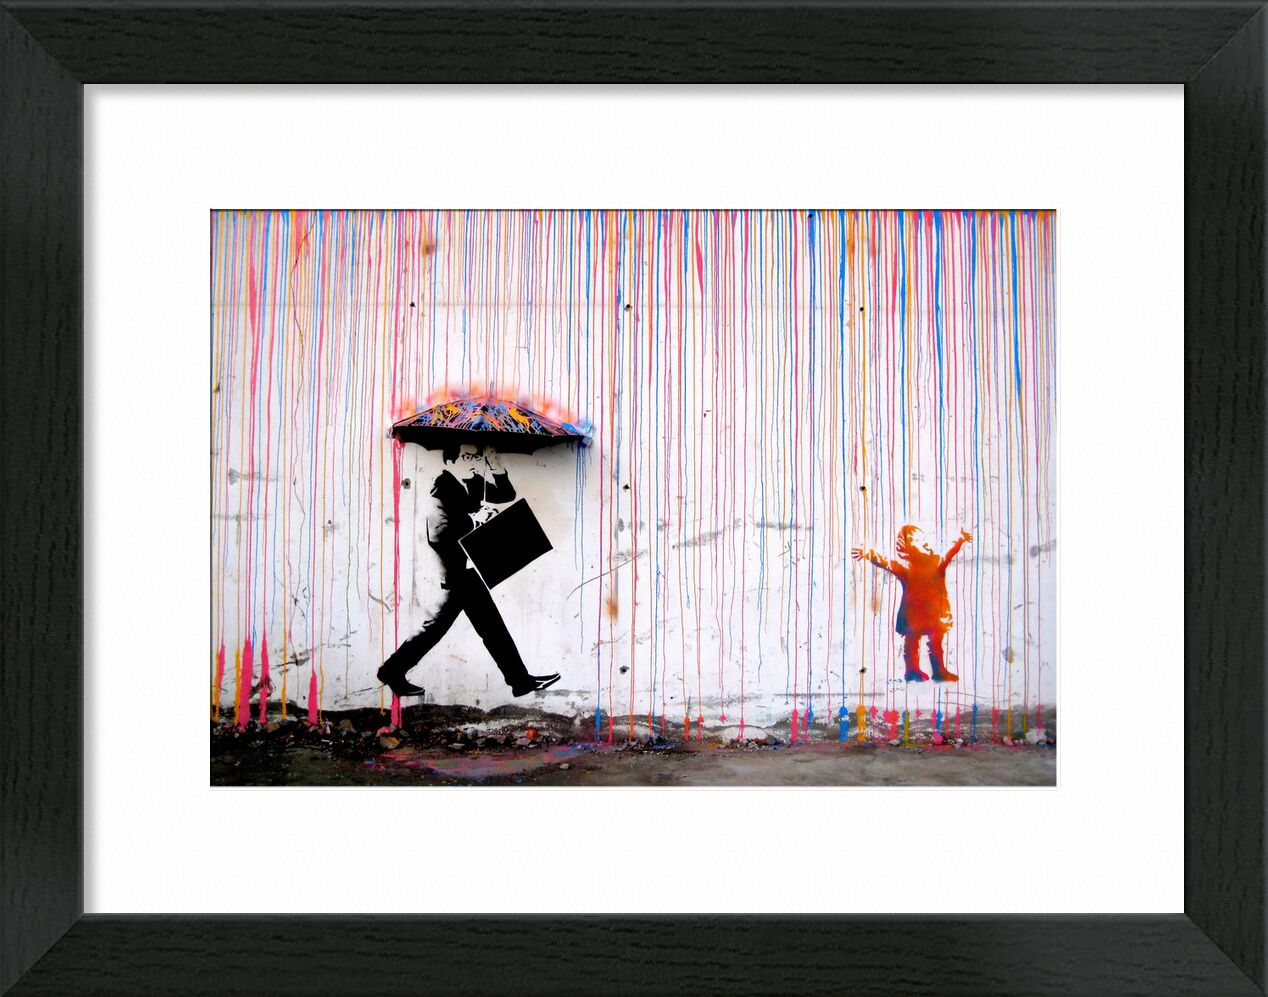 Farbiger Regen - Banksy von Bildende Kunst, Prodi Art, banksy, Regen, Kind, Straße, Zeichnung, Graffiti, Freude, Geschäftsmann